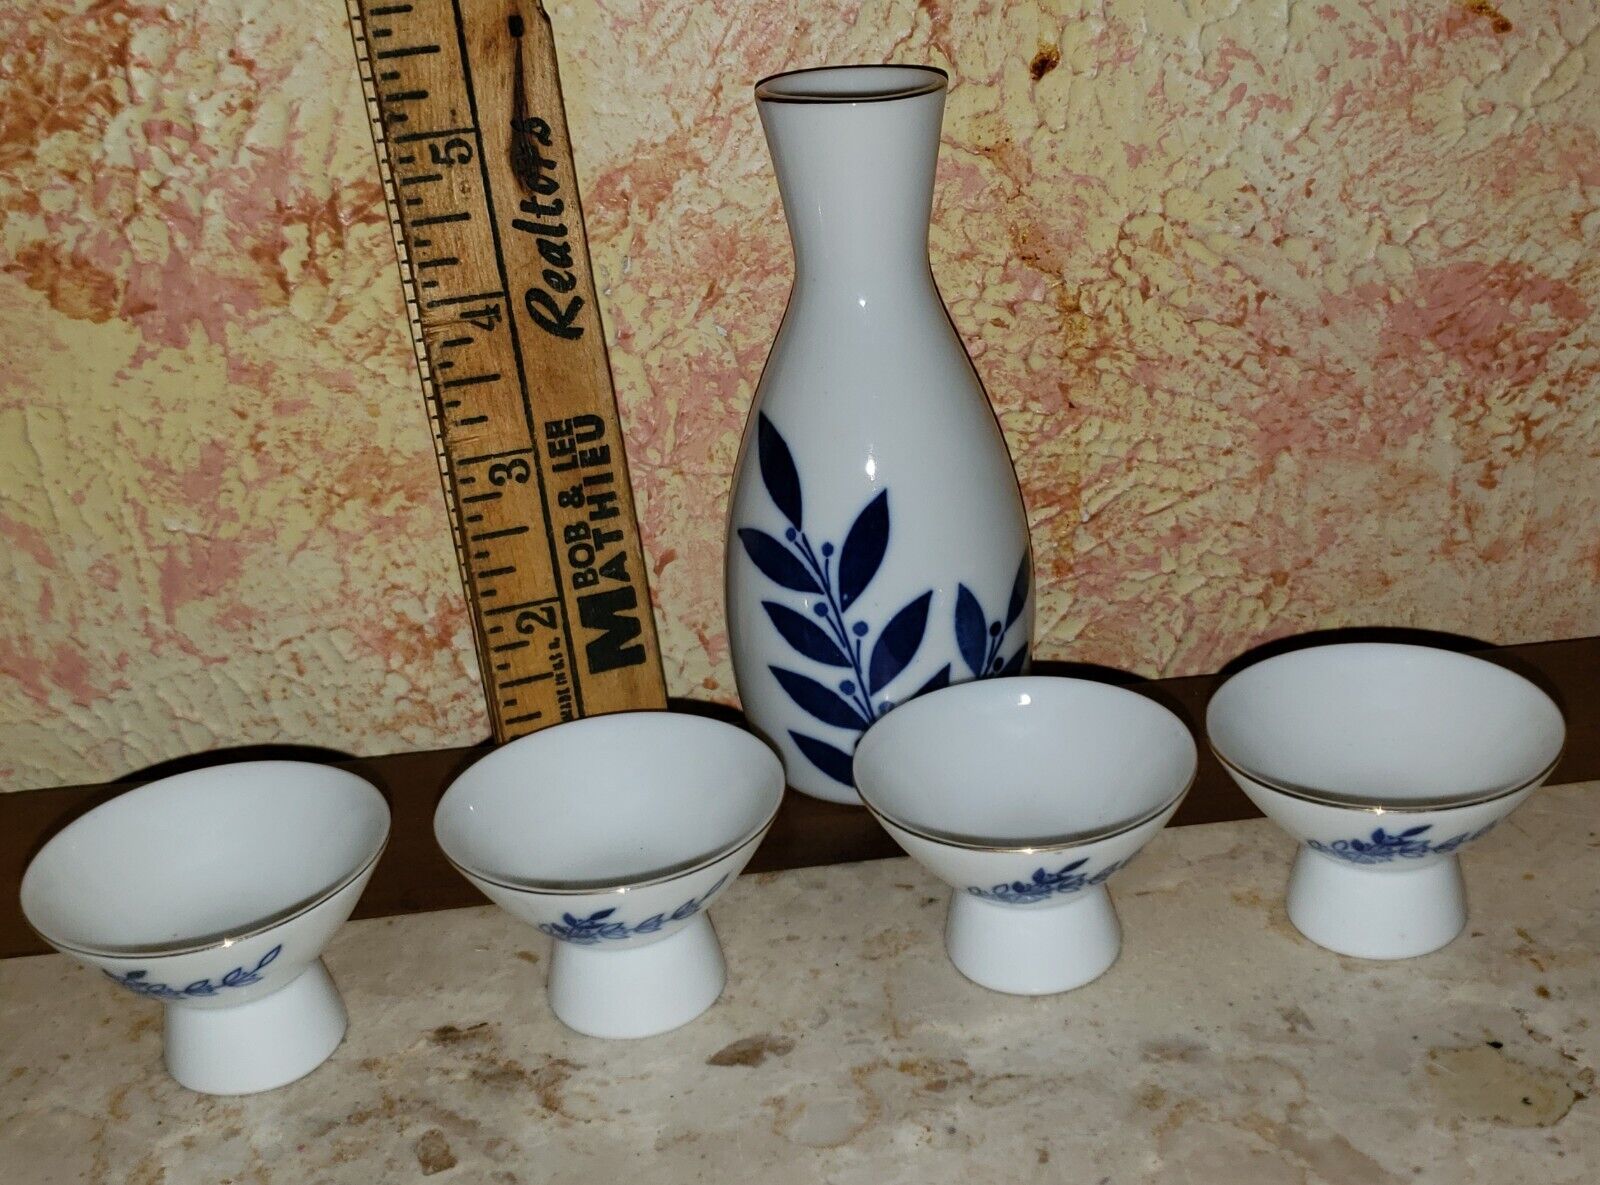 Vintage Finest Sake Gekkeikan Porcelain 5 Piece Set Made in Japan